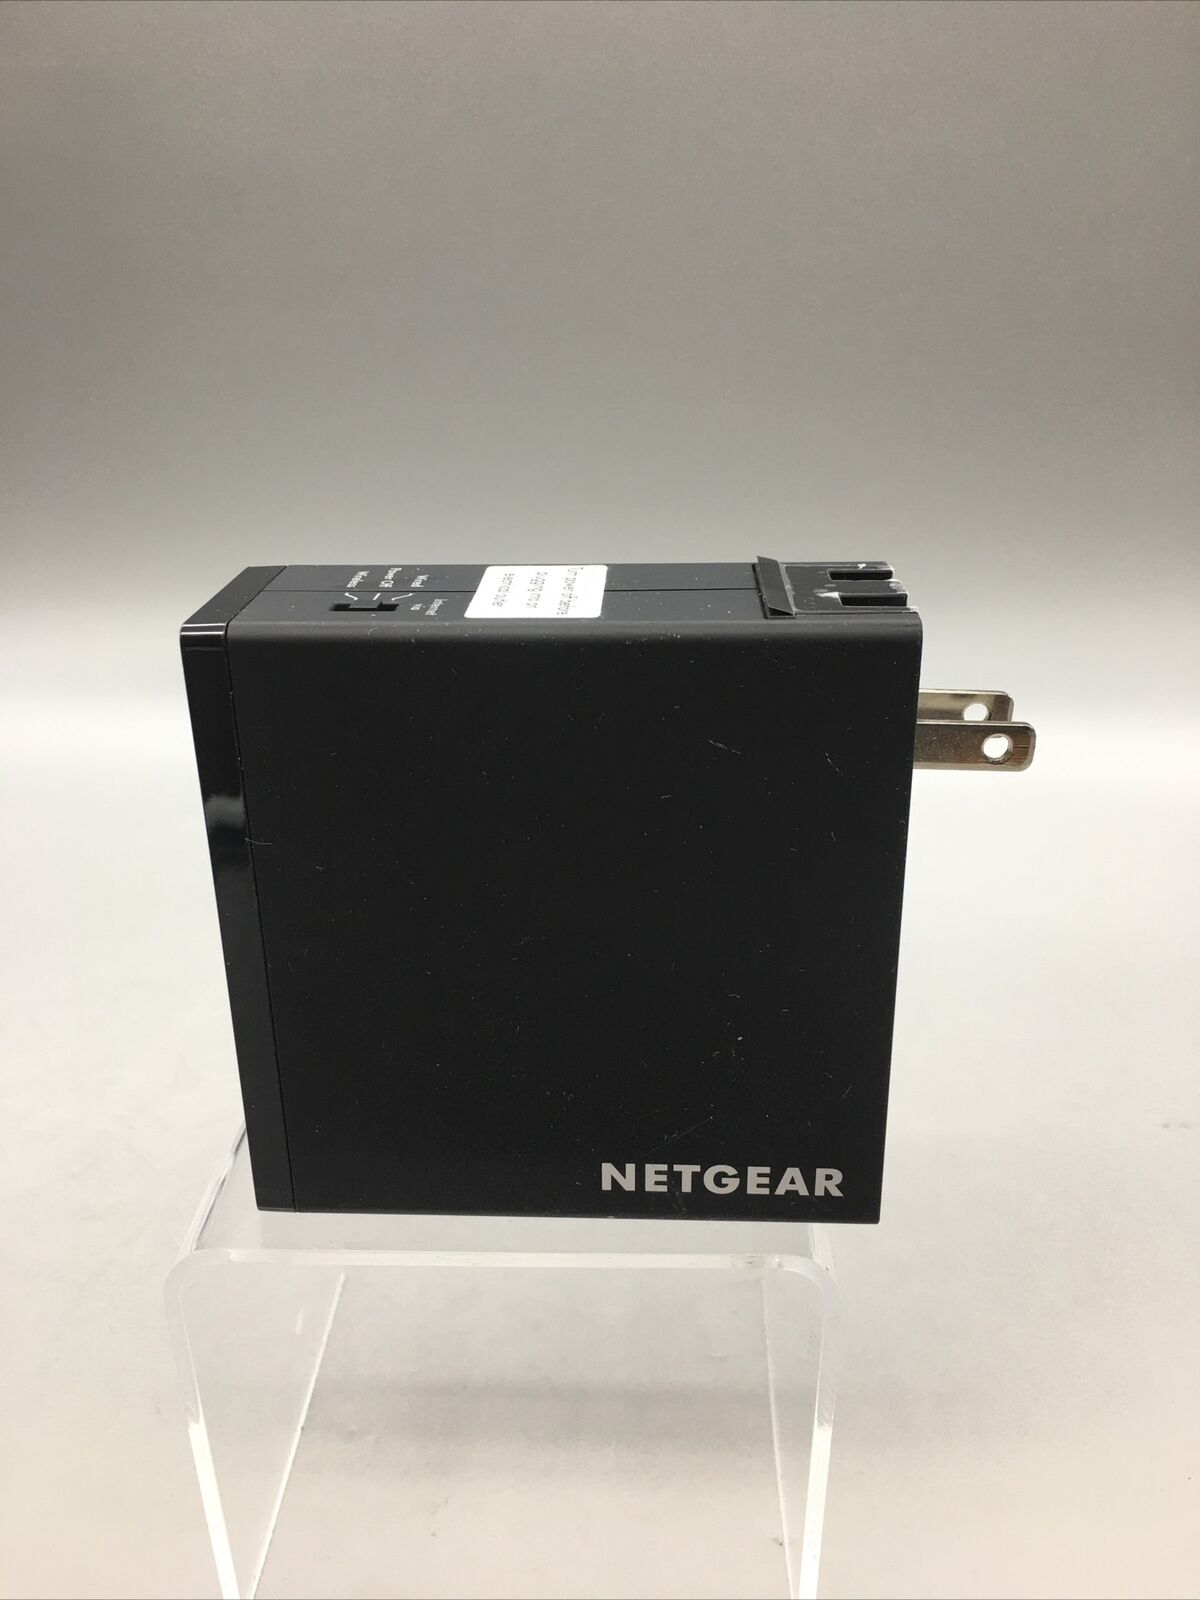 NETGEAR Trek N300 Travel Router Range Extender Wireless Bridge PR2000 B09